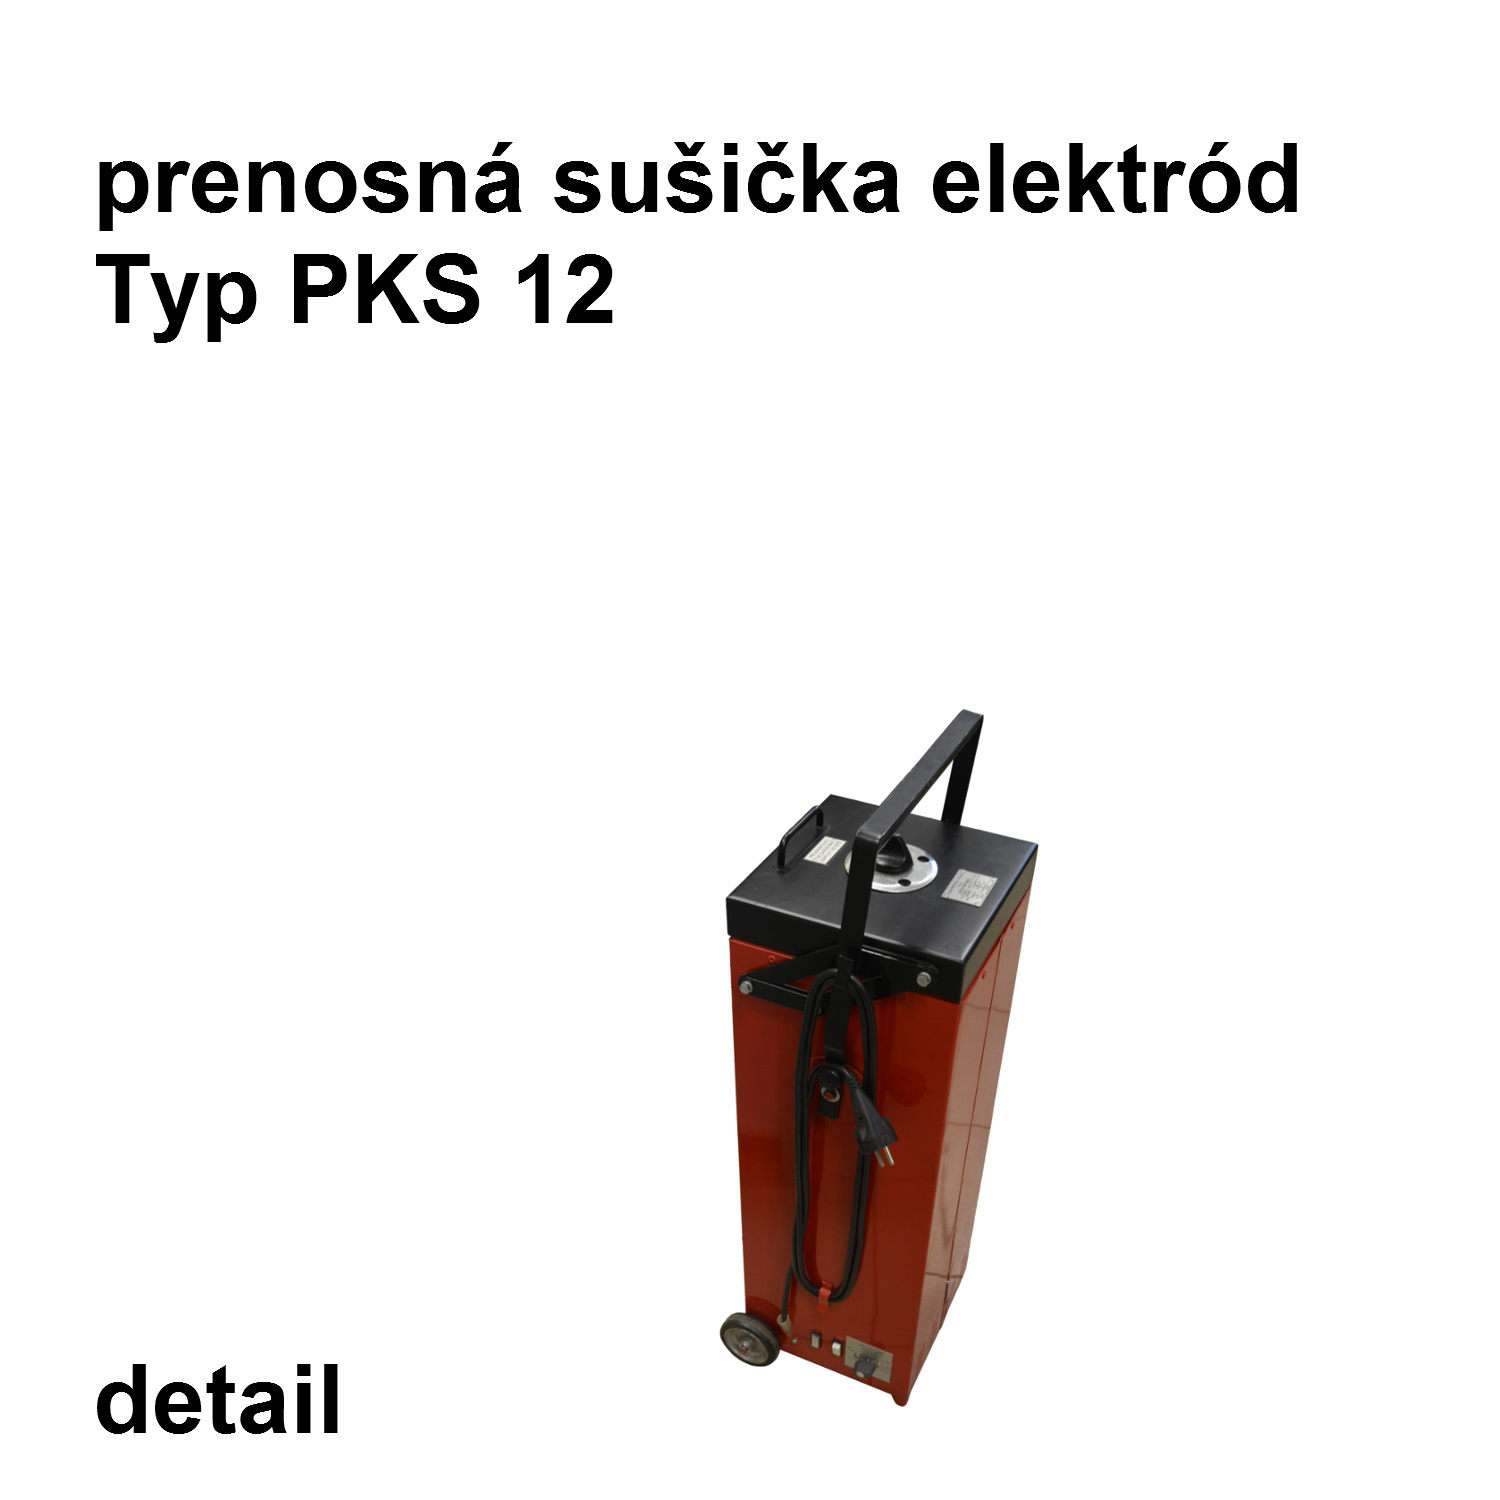 prenosná sušička elektród PKS 12